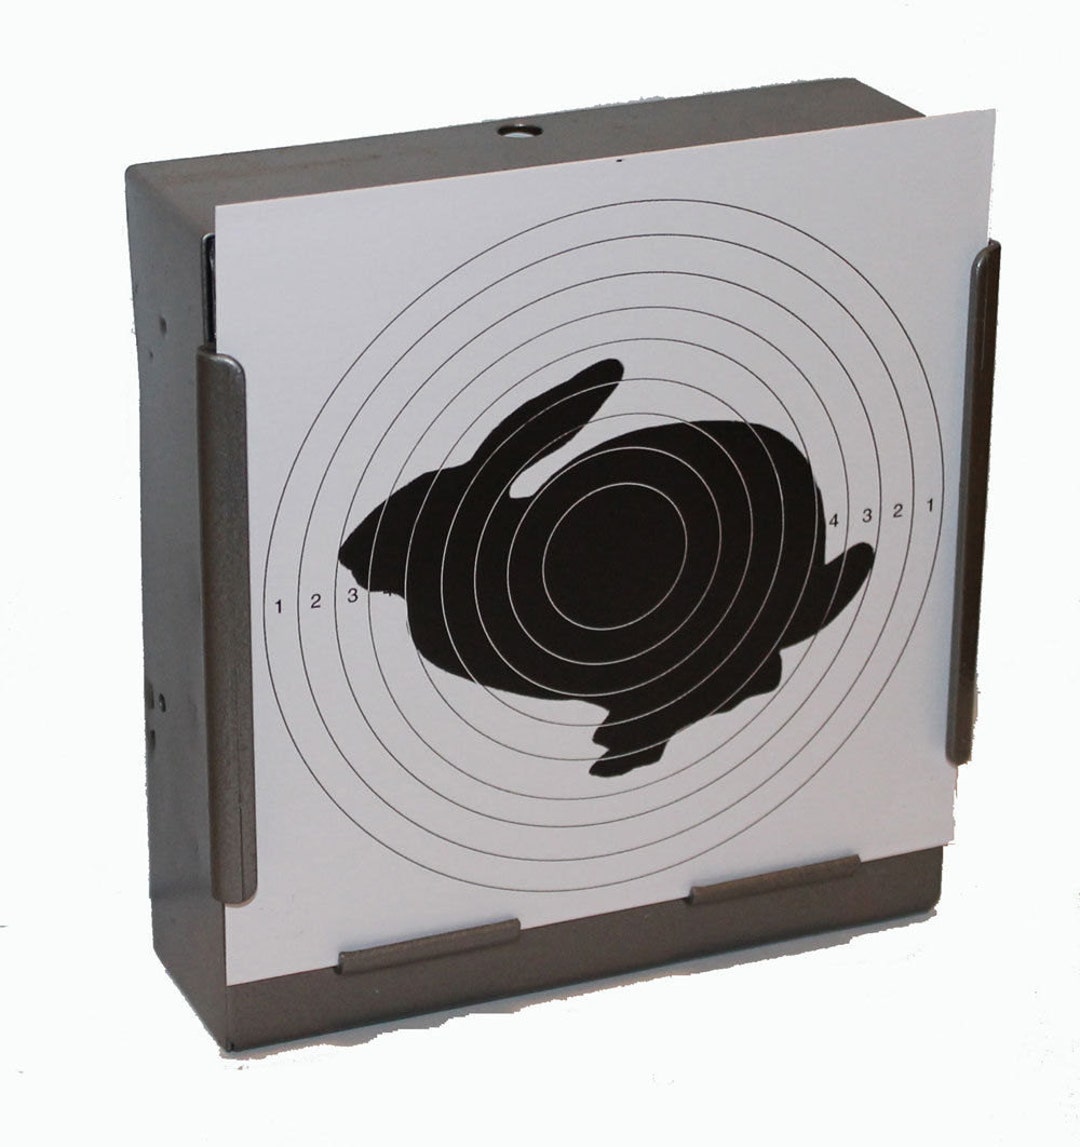 100 x carabina ad aria compressa disegno bersaglio coniglio su